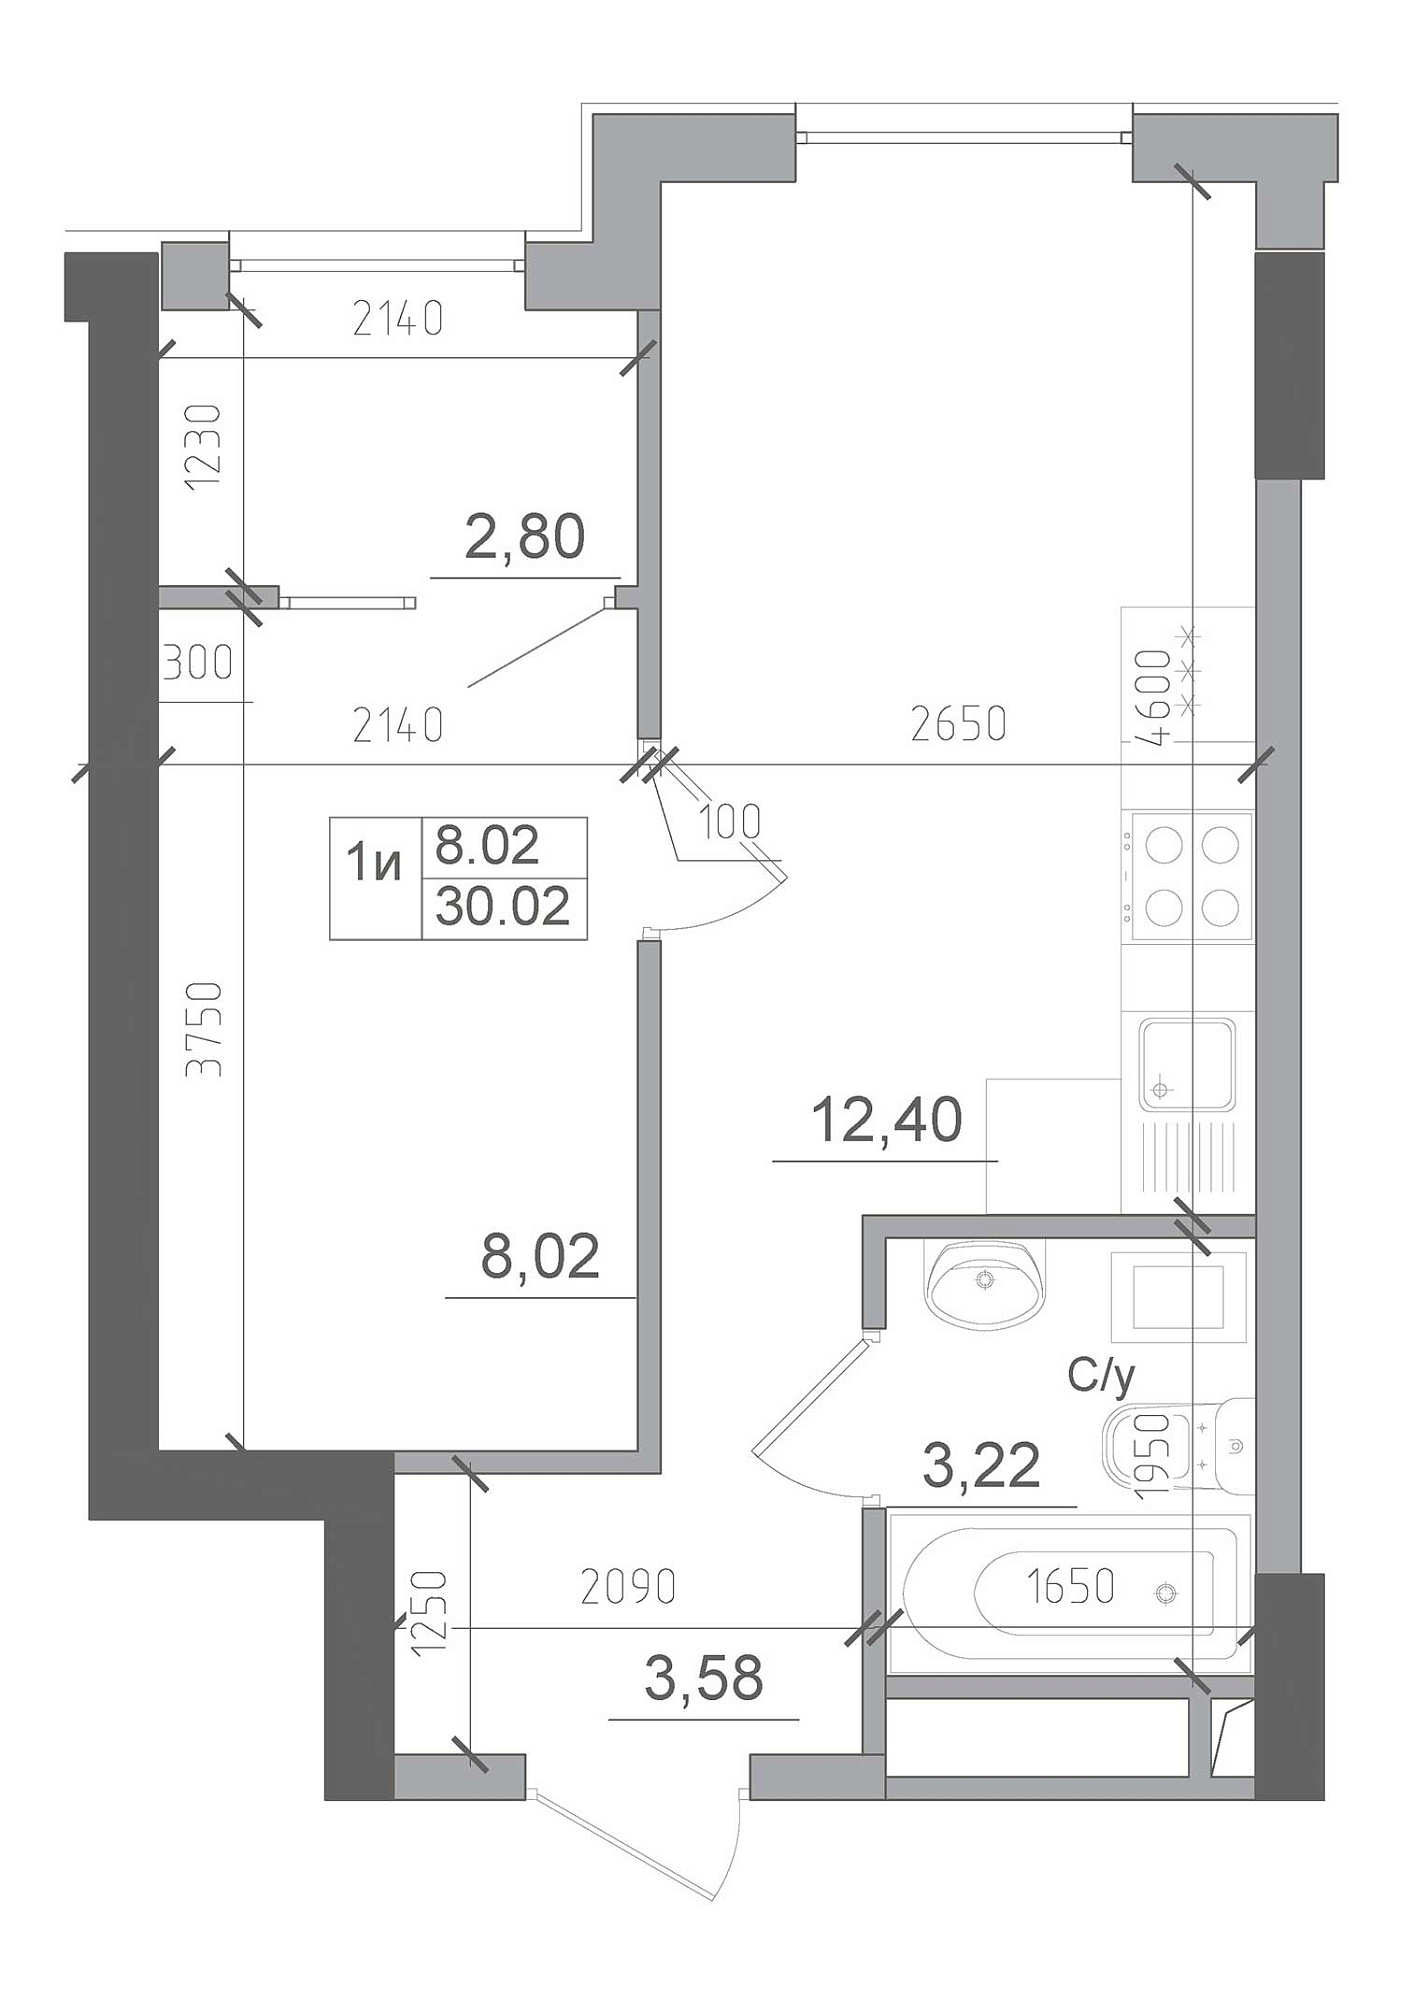 Планування 1-к квартира площею 30.02м2, AB-22-05/00014.